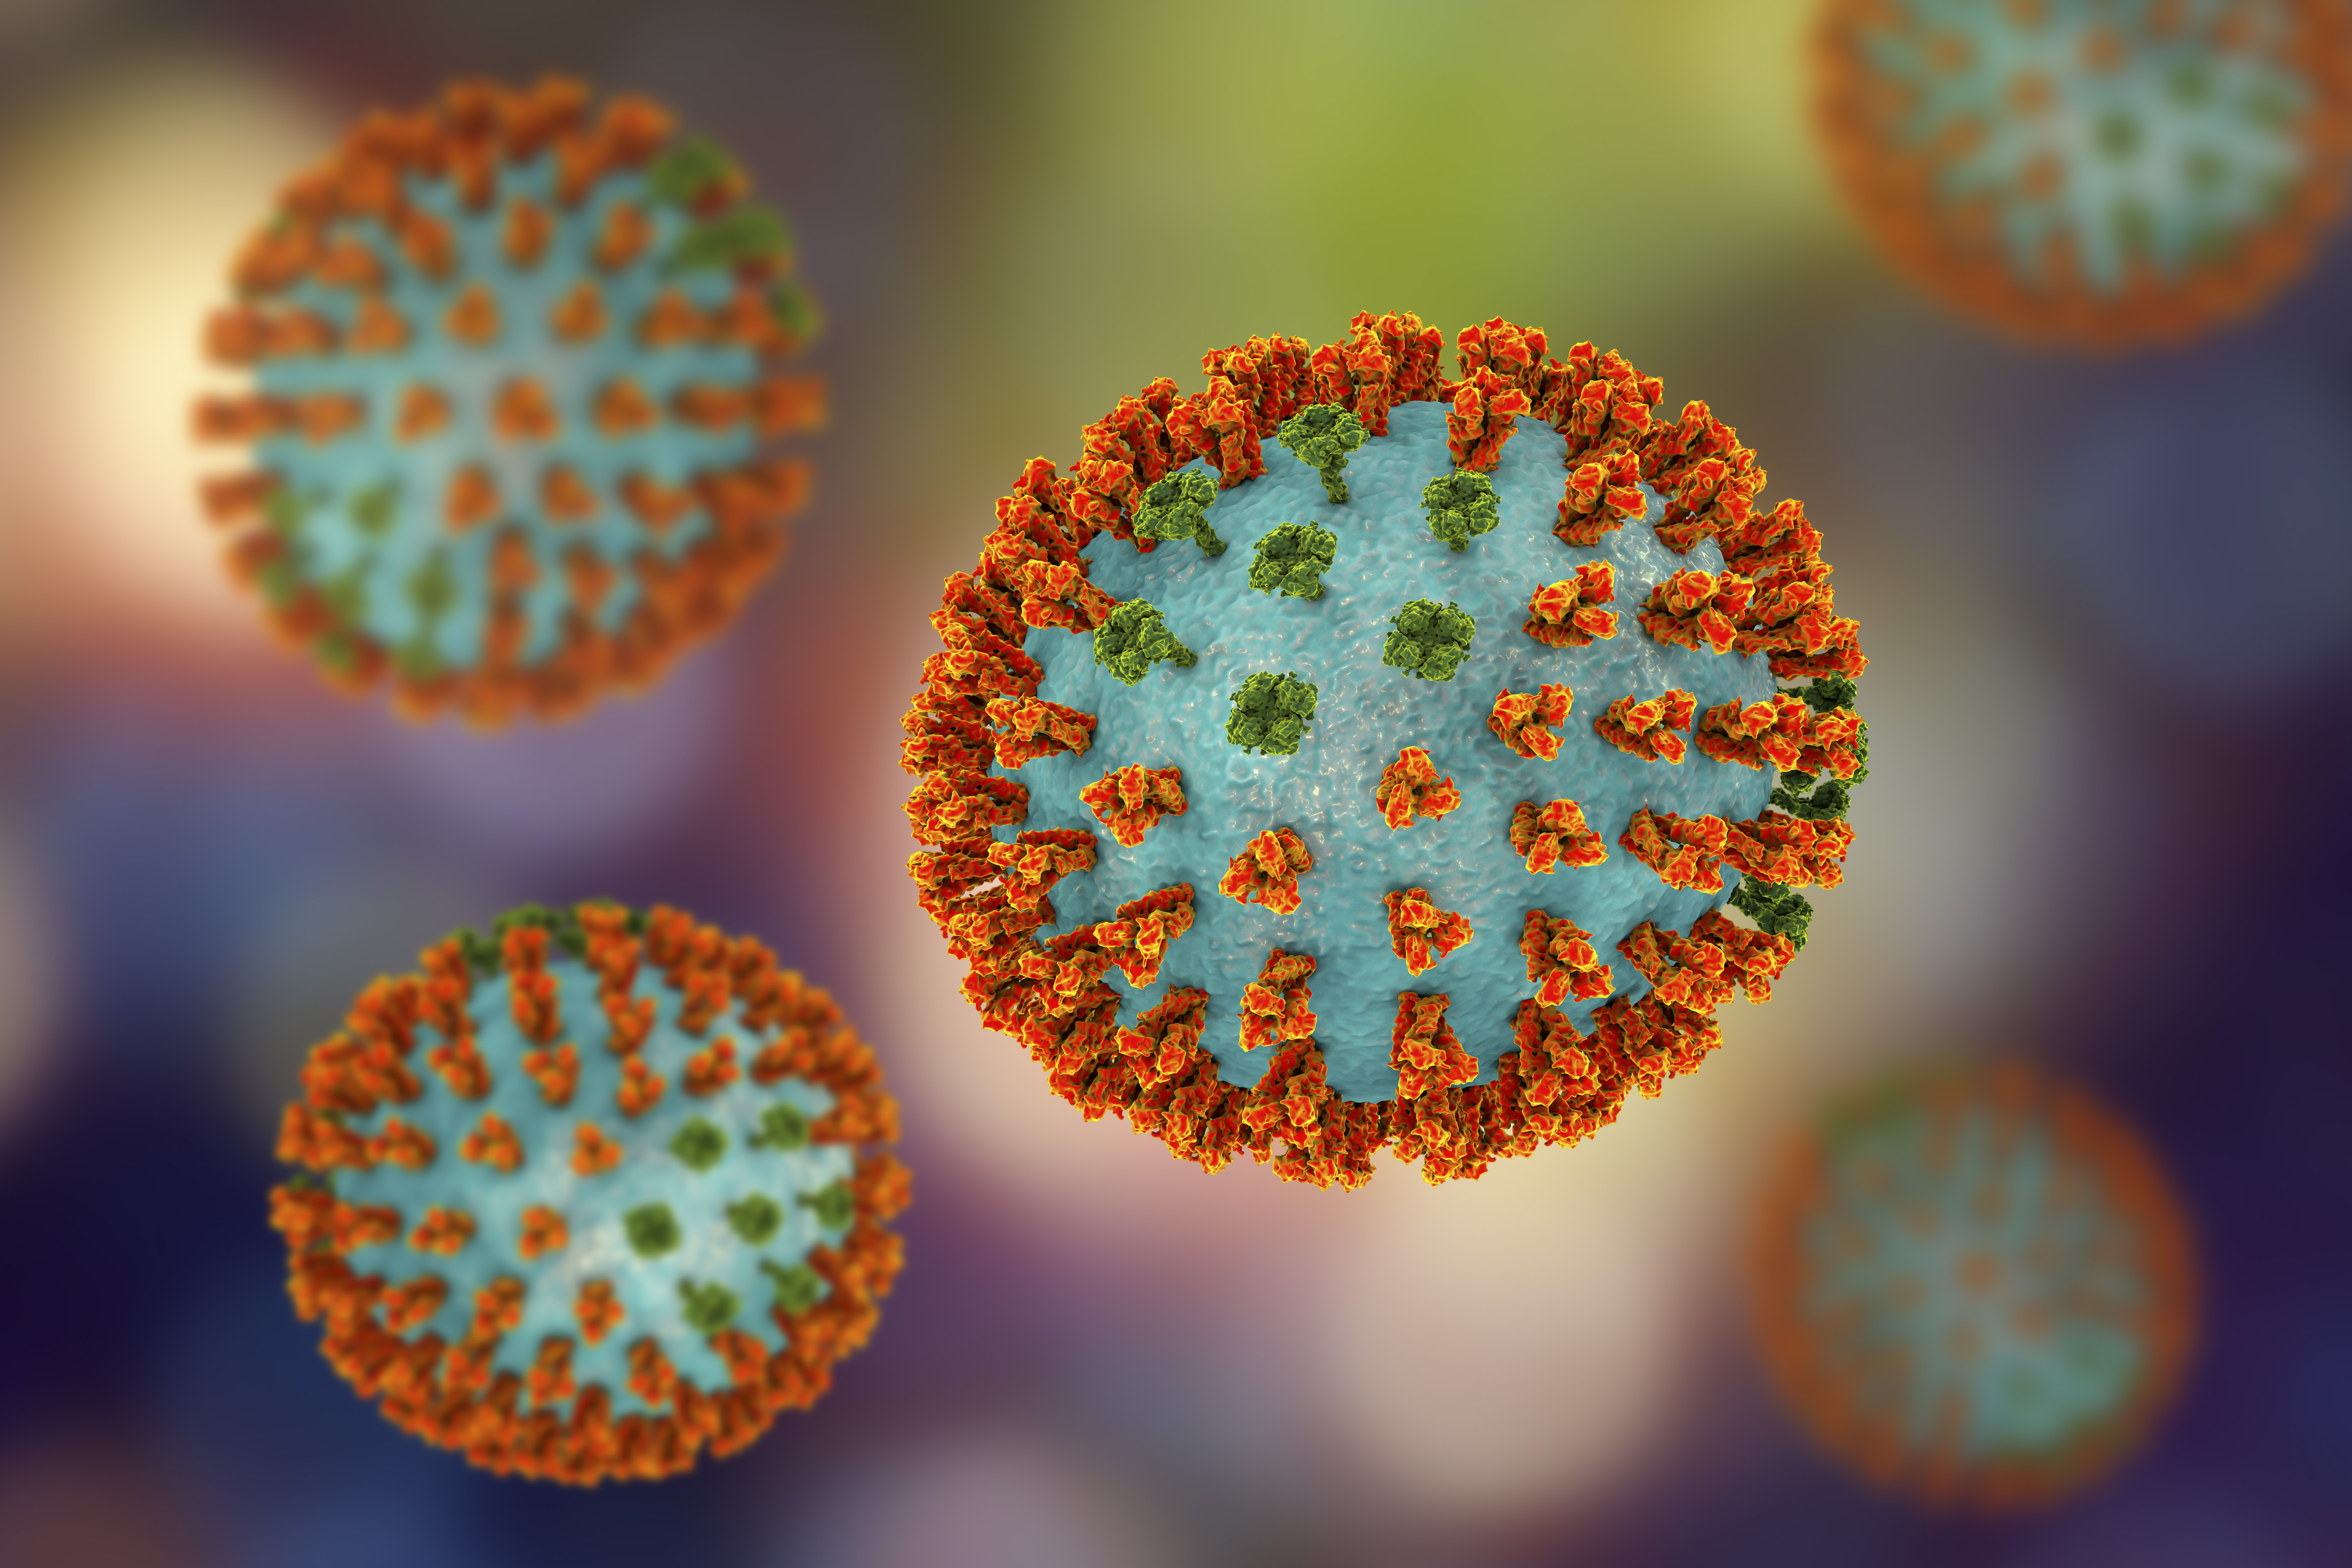 A H3N2 3D modellje a felszínét borító, narancssárgára színezett hemagglutinin és zöldre színezett neuroaminidáz glükofehérje-tüskékkel. A hemagglutinin tüskék révén csatlakozik a vírus az emberek légúti sejtjeihez, a neuroaminidáz pedig az újonnan termelt vírusrészecskék kibocsátásában játszik szerepet.